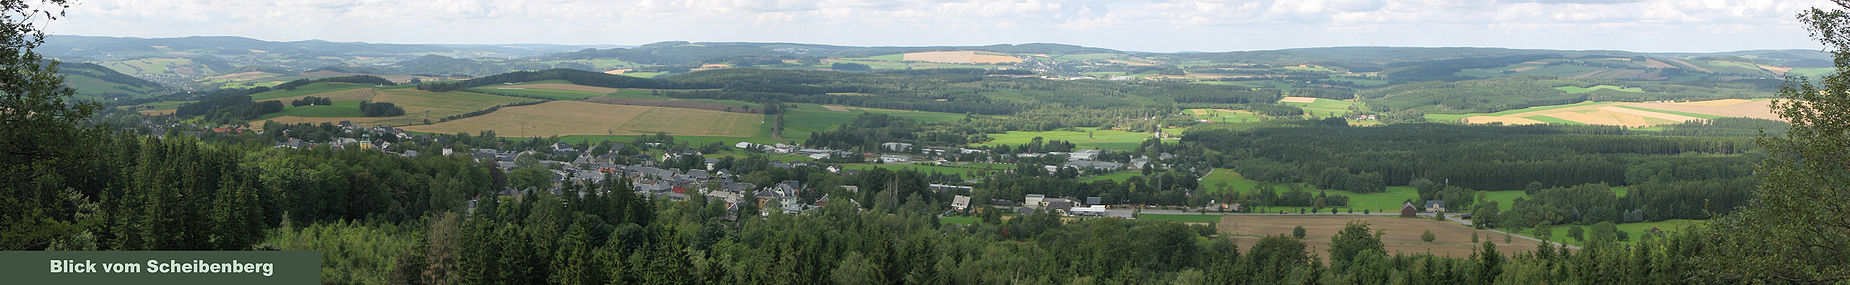 Panorama vom gleichnamigen Berg Scheibenberg (807 m ü. NN) Richtung der Stadt Scheibenberg mit Blick auf die Morgenleithe (812 m ü. NN), den Spiegelwald (727 m ü. NN), Schatzenstein (760 m ü. NN) und den Geyerschen Wald mit Sendeturm. (von links)